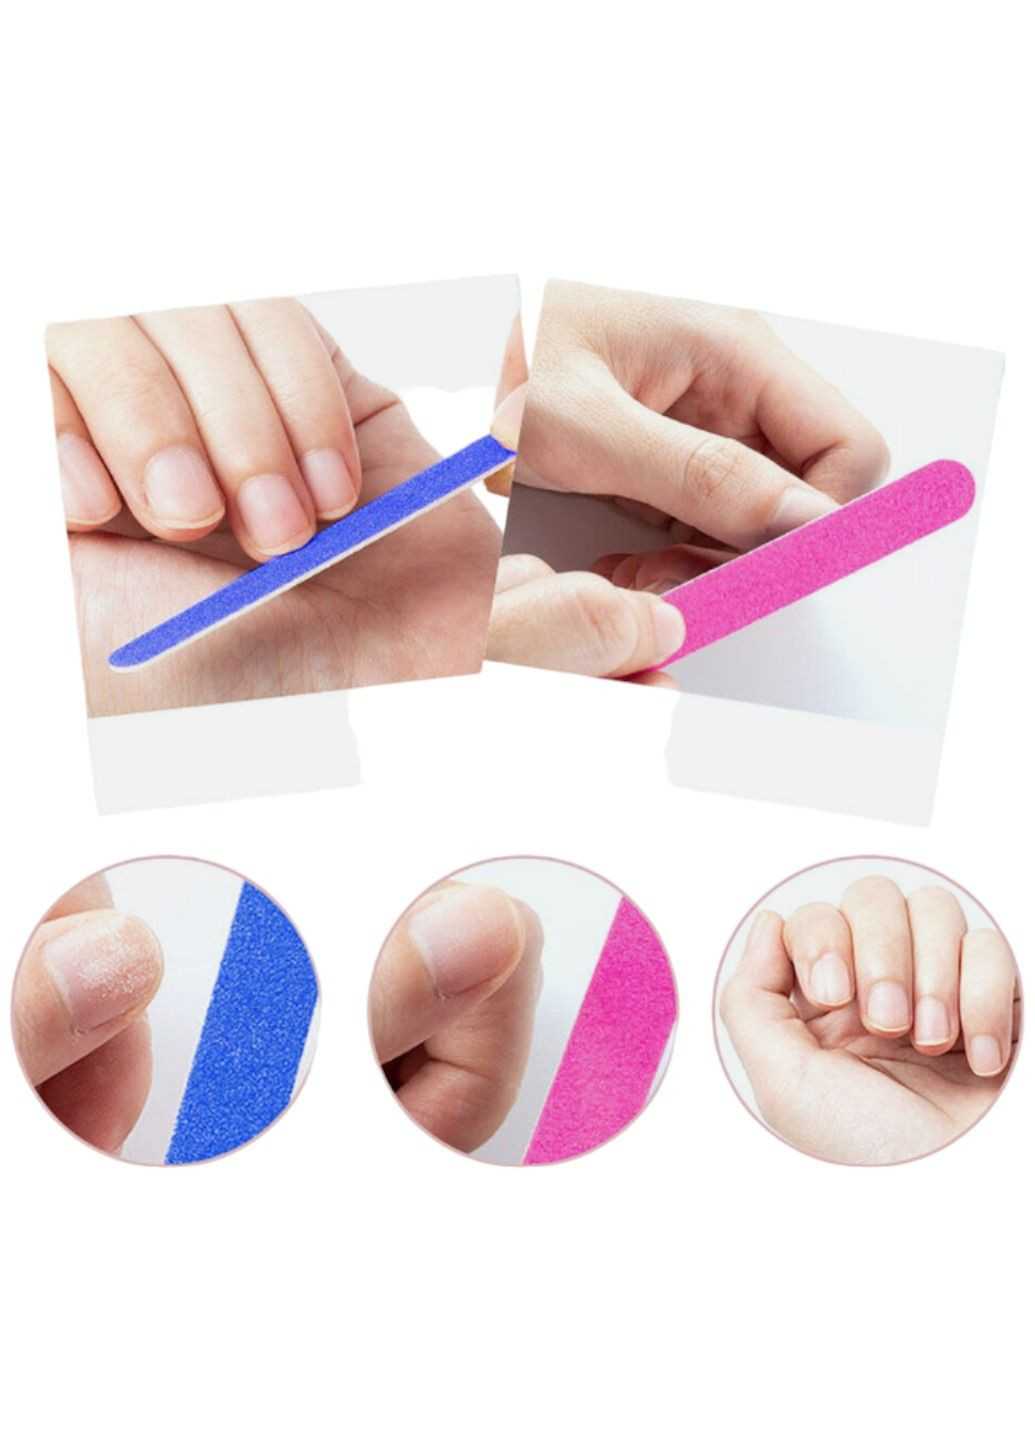 Пилочка для ногтей дорожная разноцветная 6 см, 4+1 No Brand (291161978)